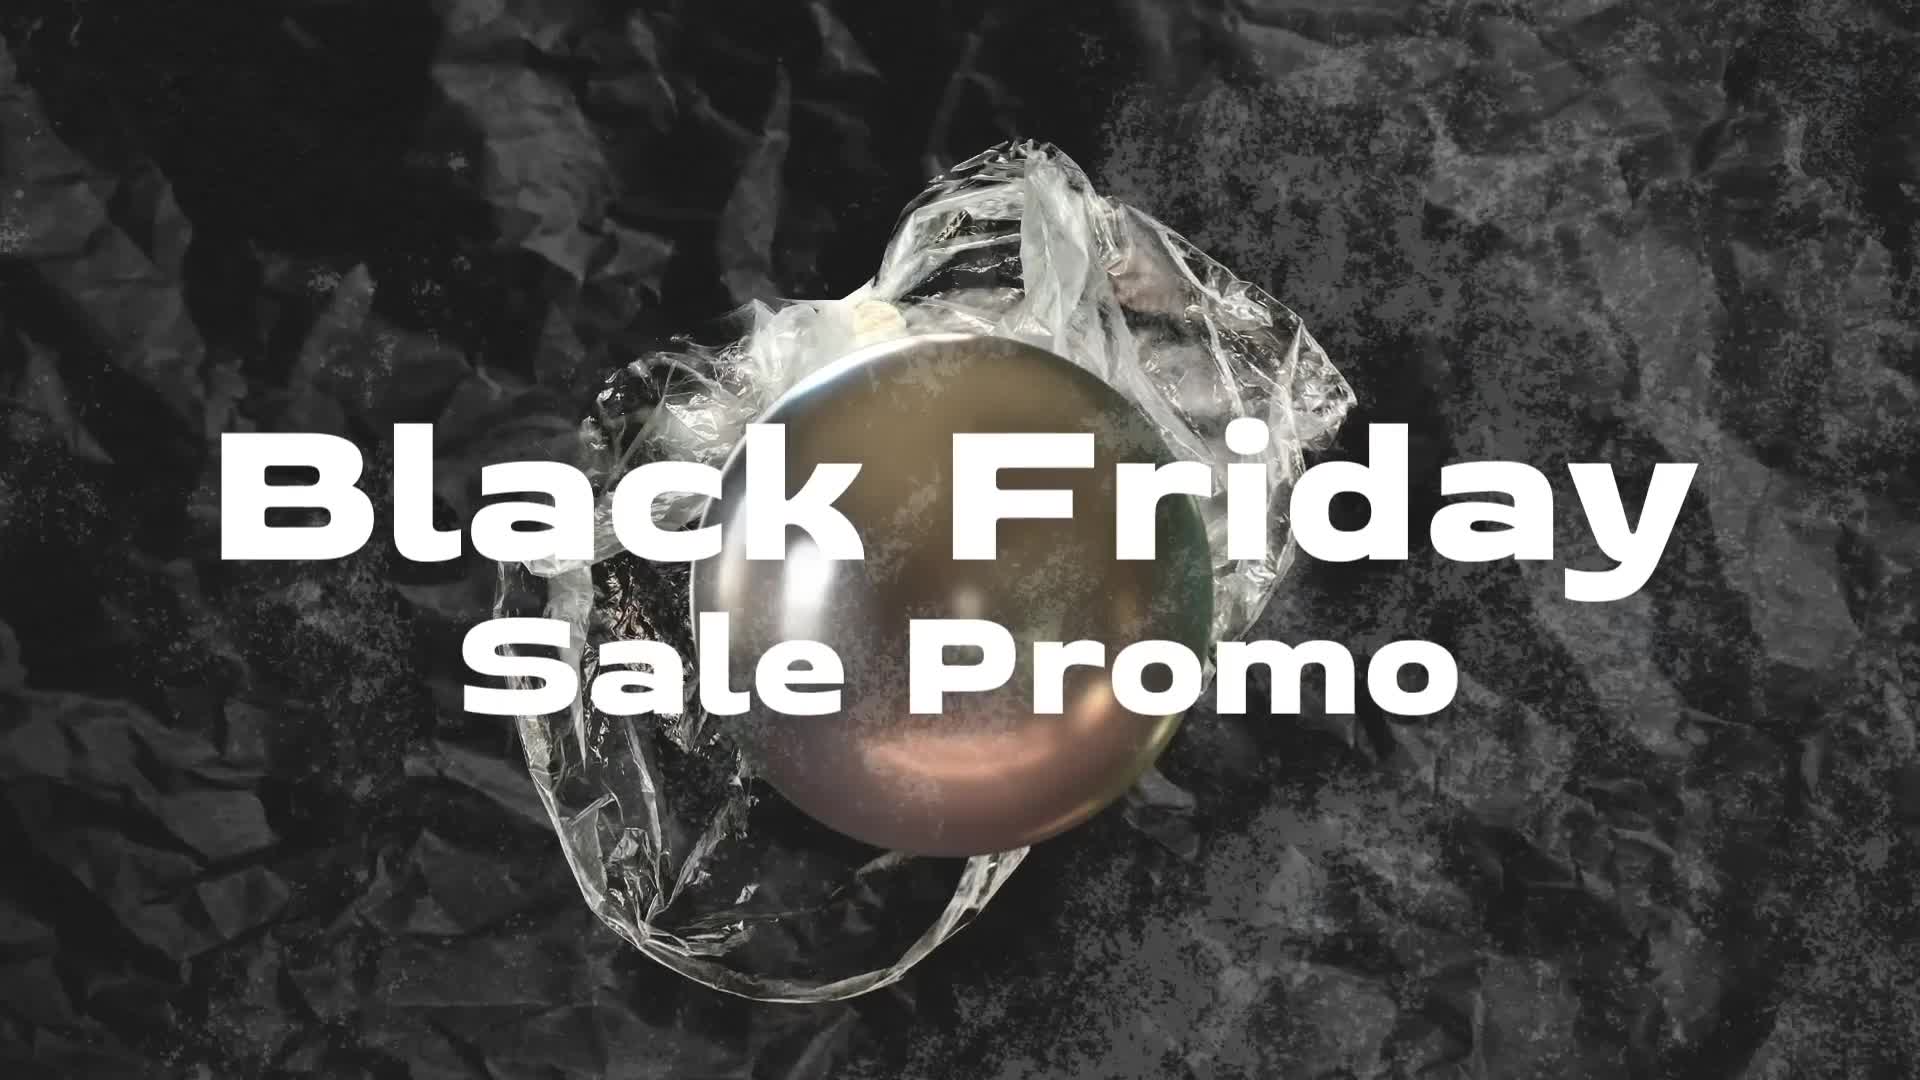 Black Friday Sale Promo Videohive 34514438 Premiere Pro Image 1